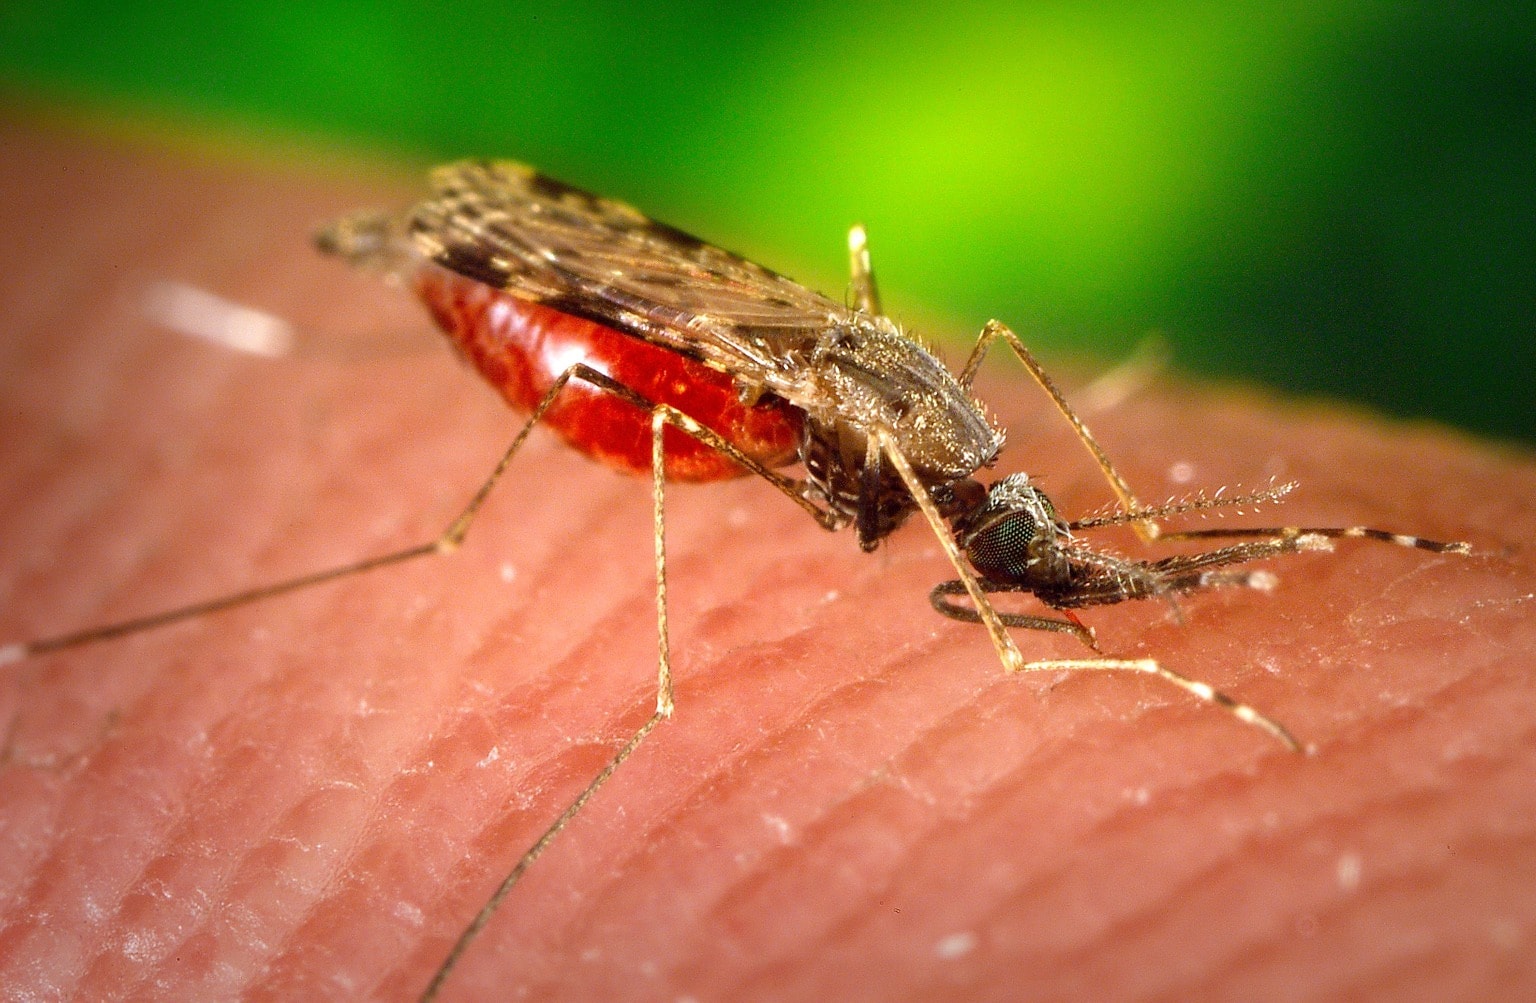 Малярийный комар фото в россии как отличить